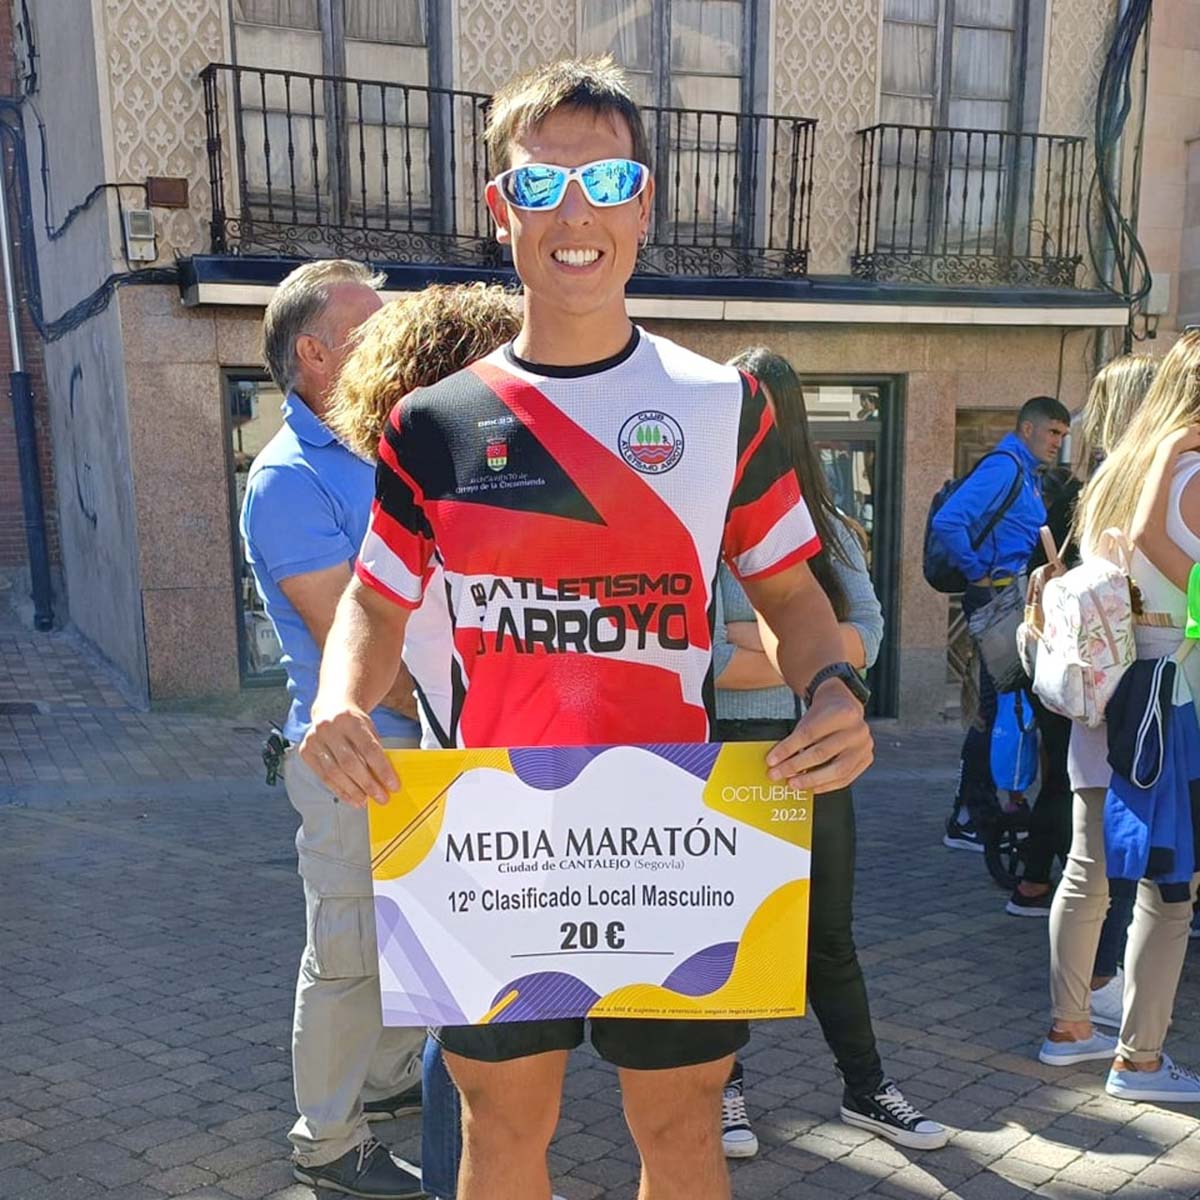 Atletismo Arroyo en la Media Maratón de Cantalejo